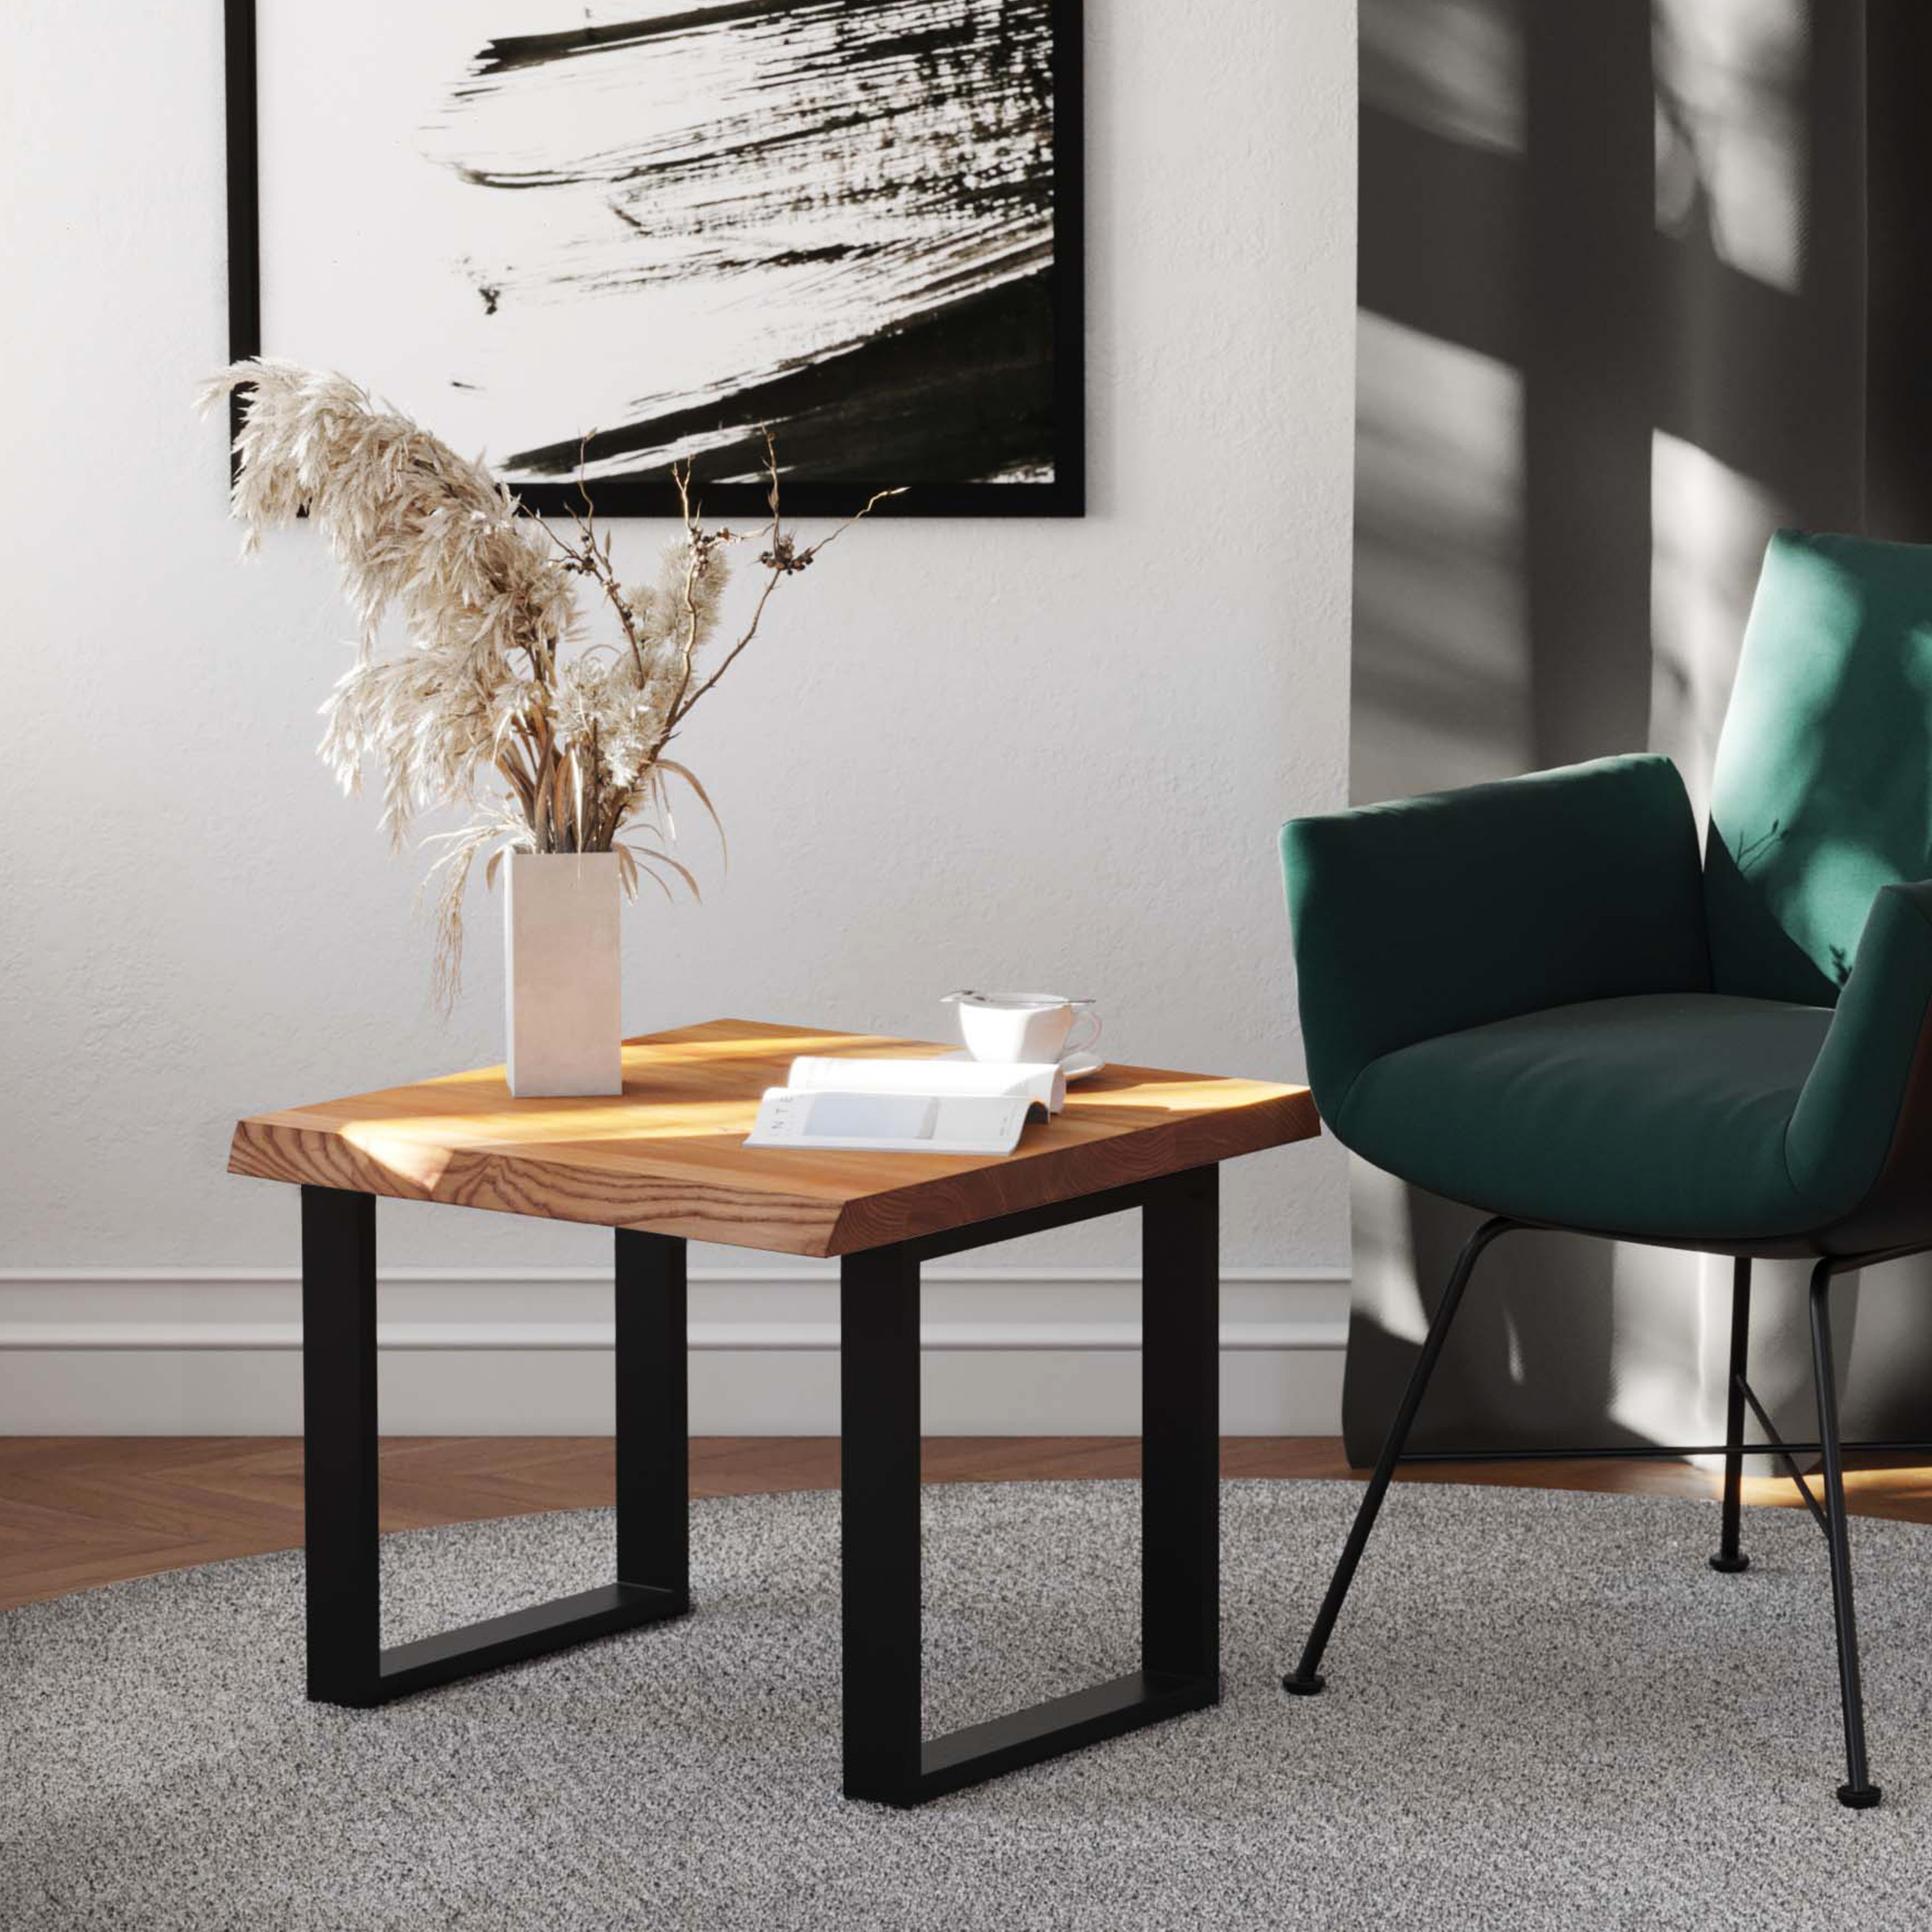 MRBLS Couchtisch – modernes rustikales Design – Wohnzimmer-Tisch  Beistelltisch Kaffeetisch Sofatisch Teetisch aus Holz (Grau Matt - Schwarz  Matt) - 65 x 45 x 53,6cm (B/H/T) : : Küche, Haushalt & Wohnen